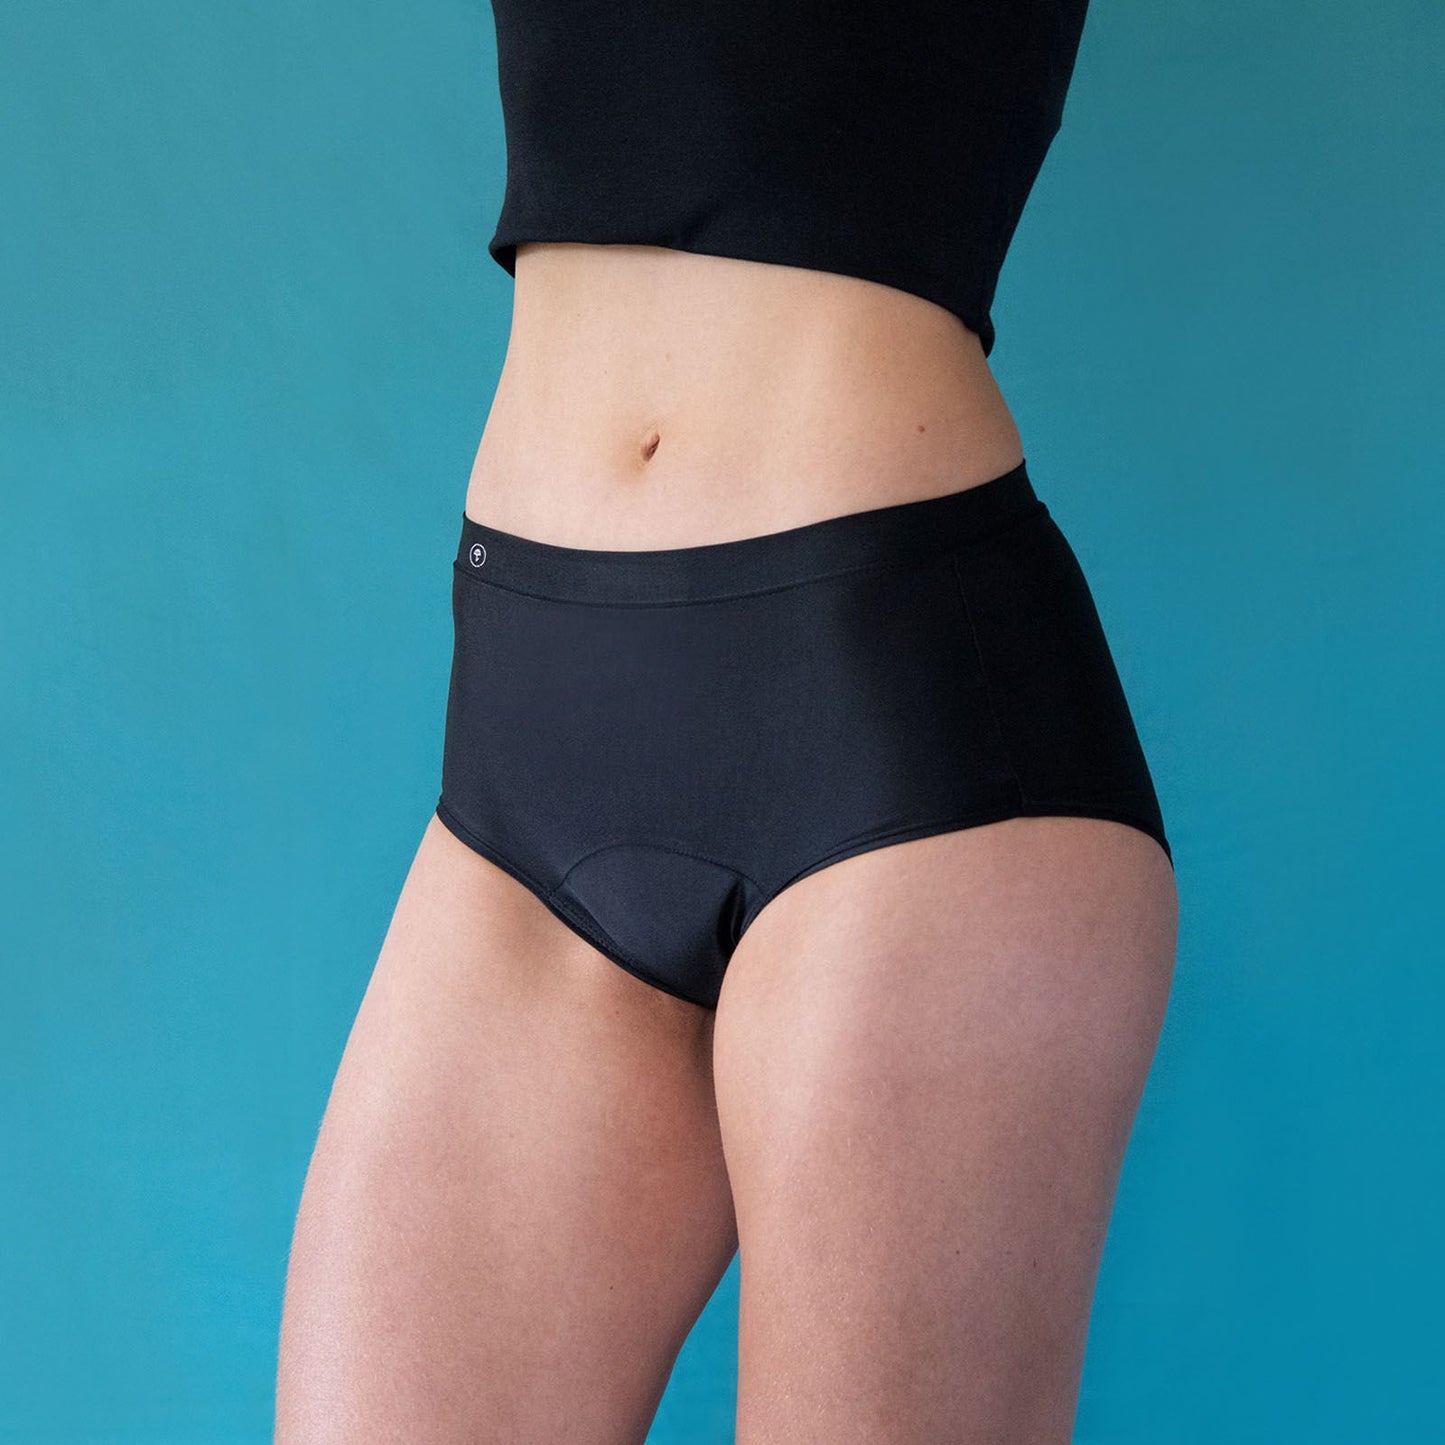 
                  
                    Mid-rise bladder leakage underwear. Best leak proof underwear NZ/AU. Period underwear NZ. LBL briefs, heavy flow, reusable incontinence underwear
                  
                